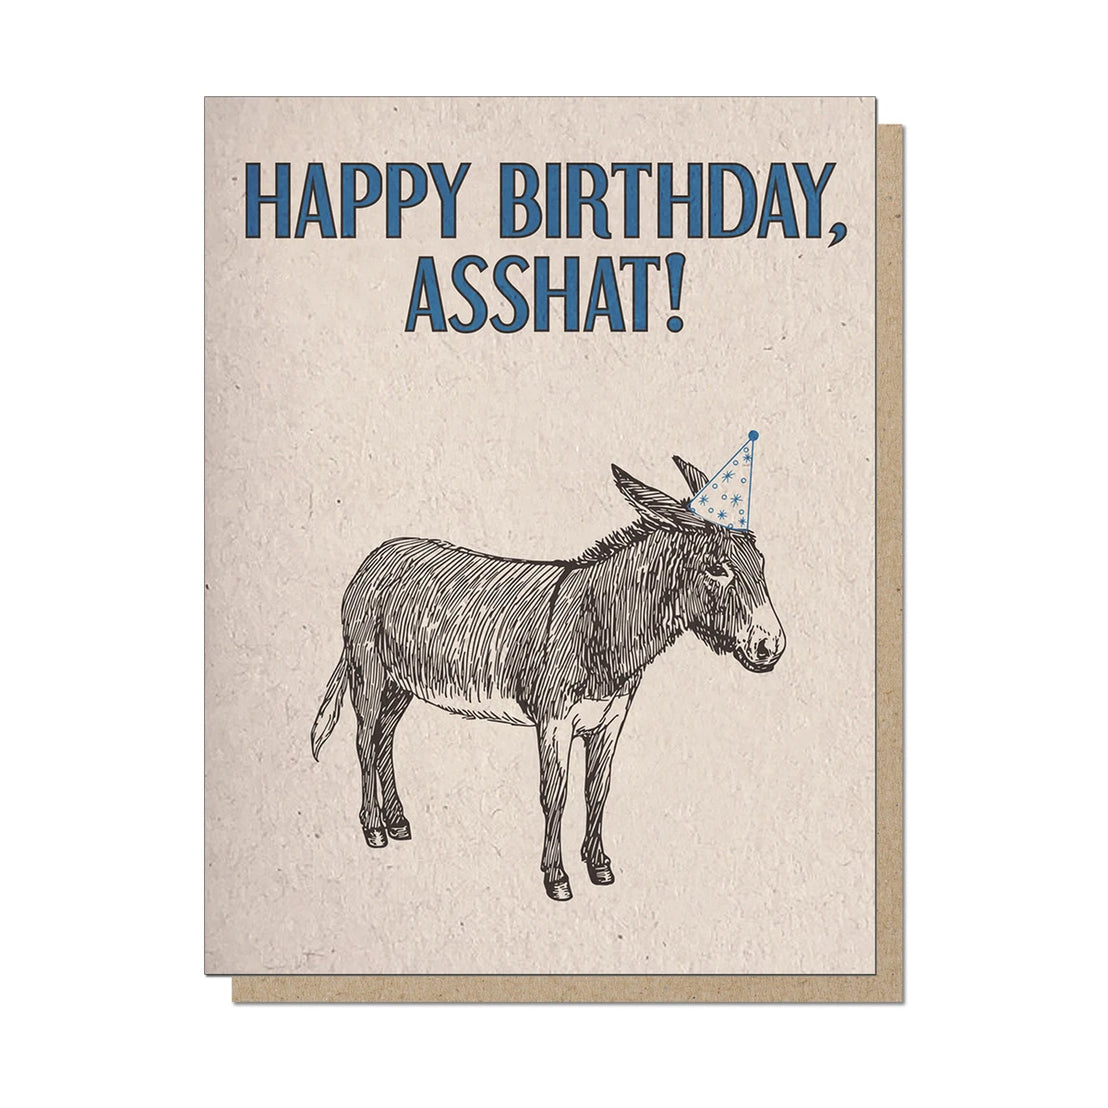 Happy Birthday Asshat, Guttersnipe